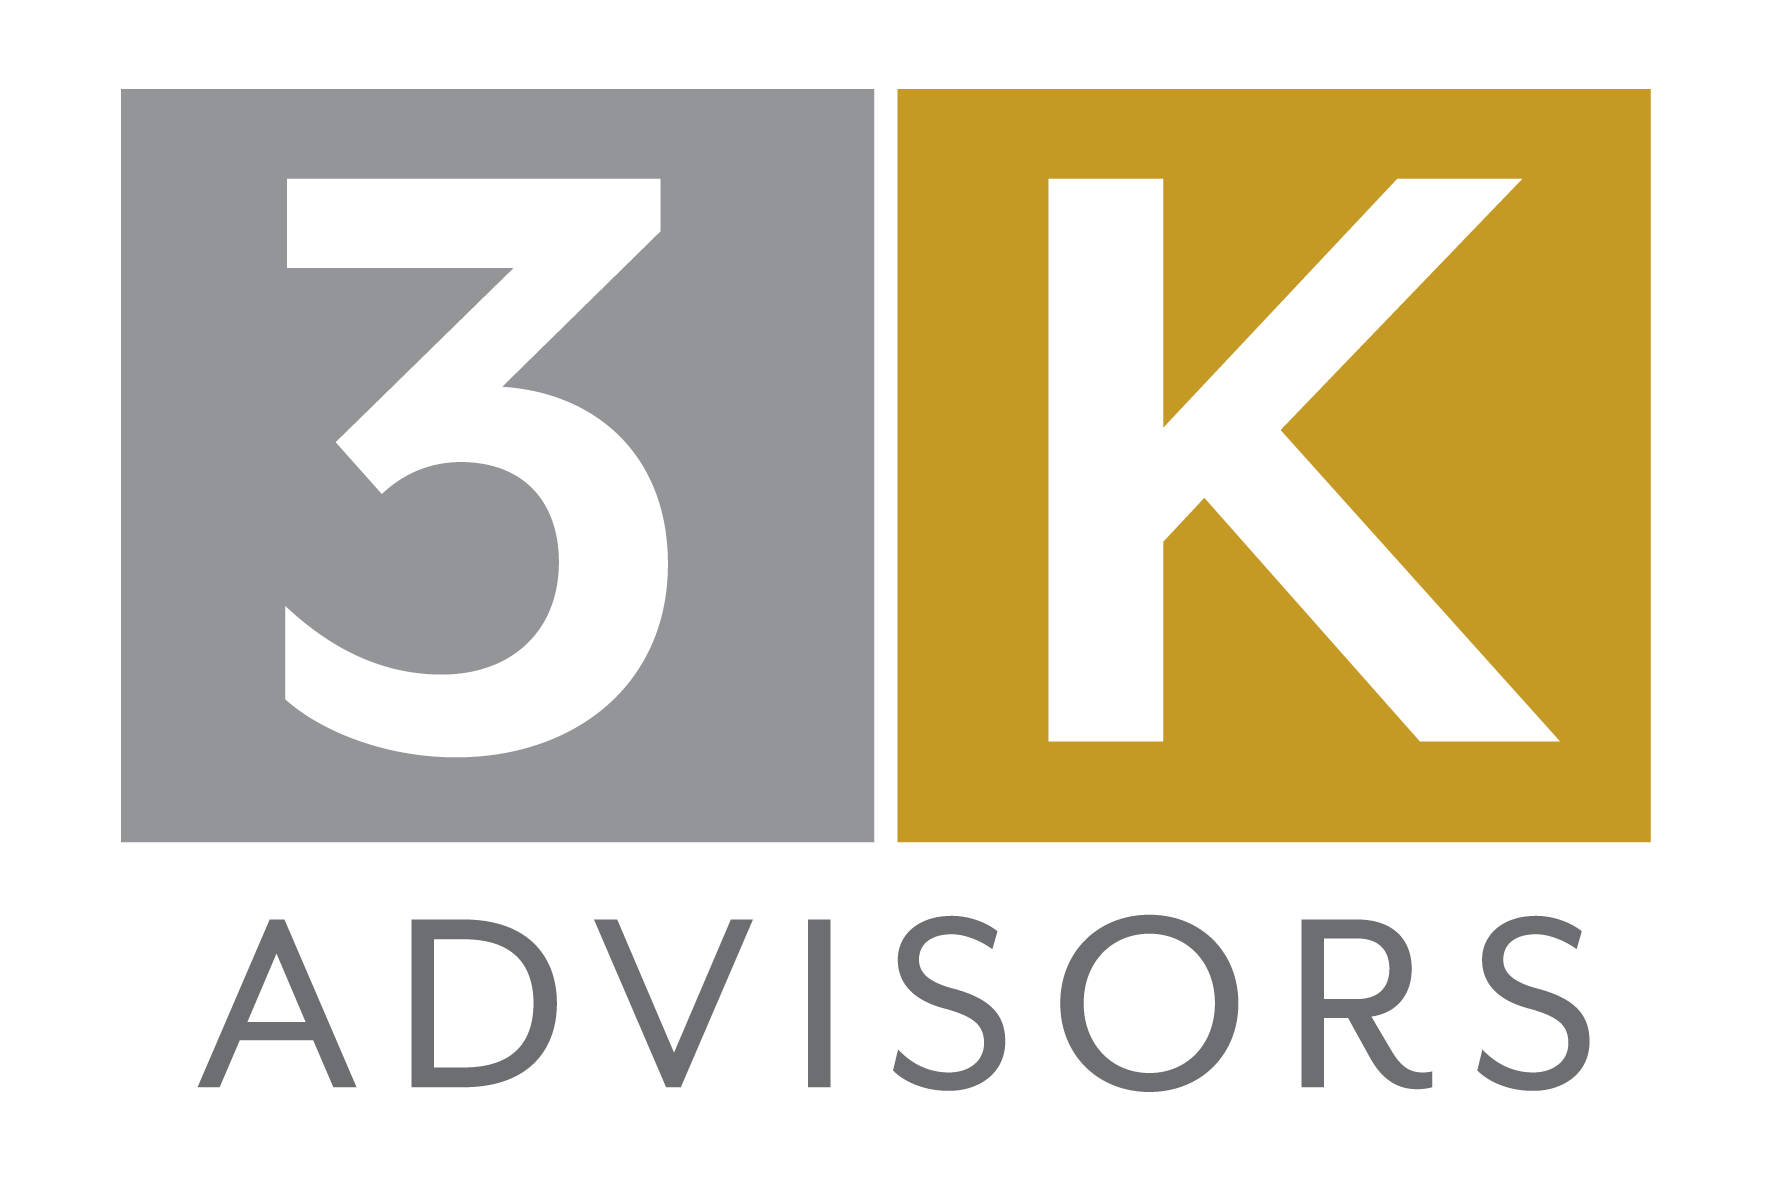 3K Advisors